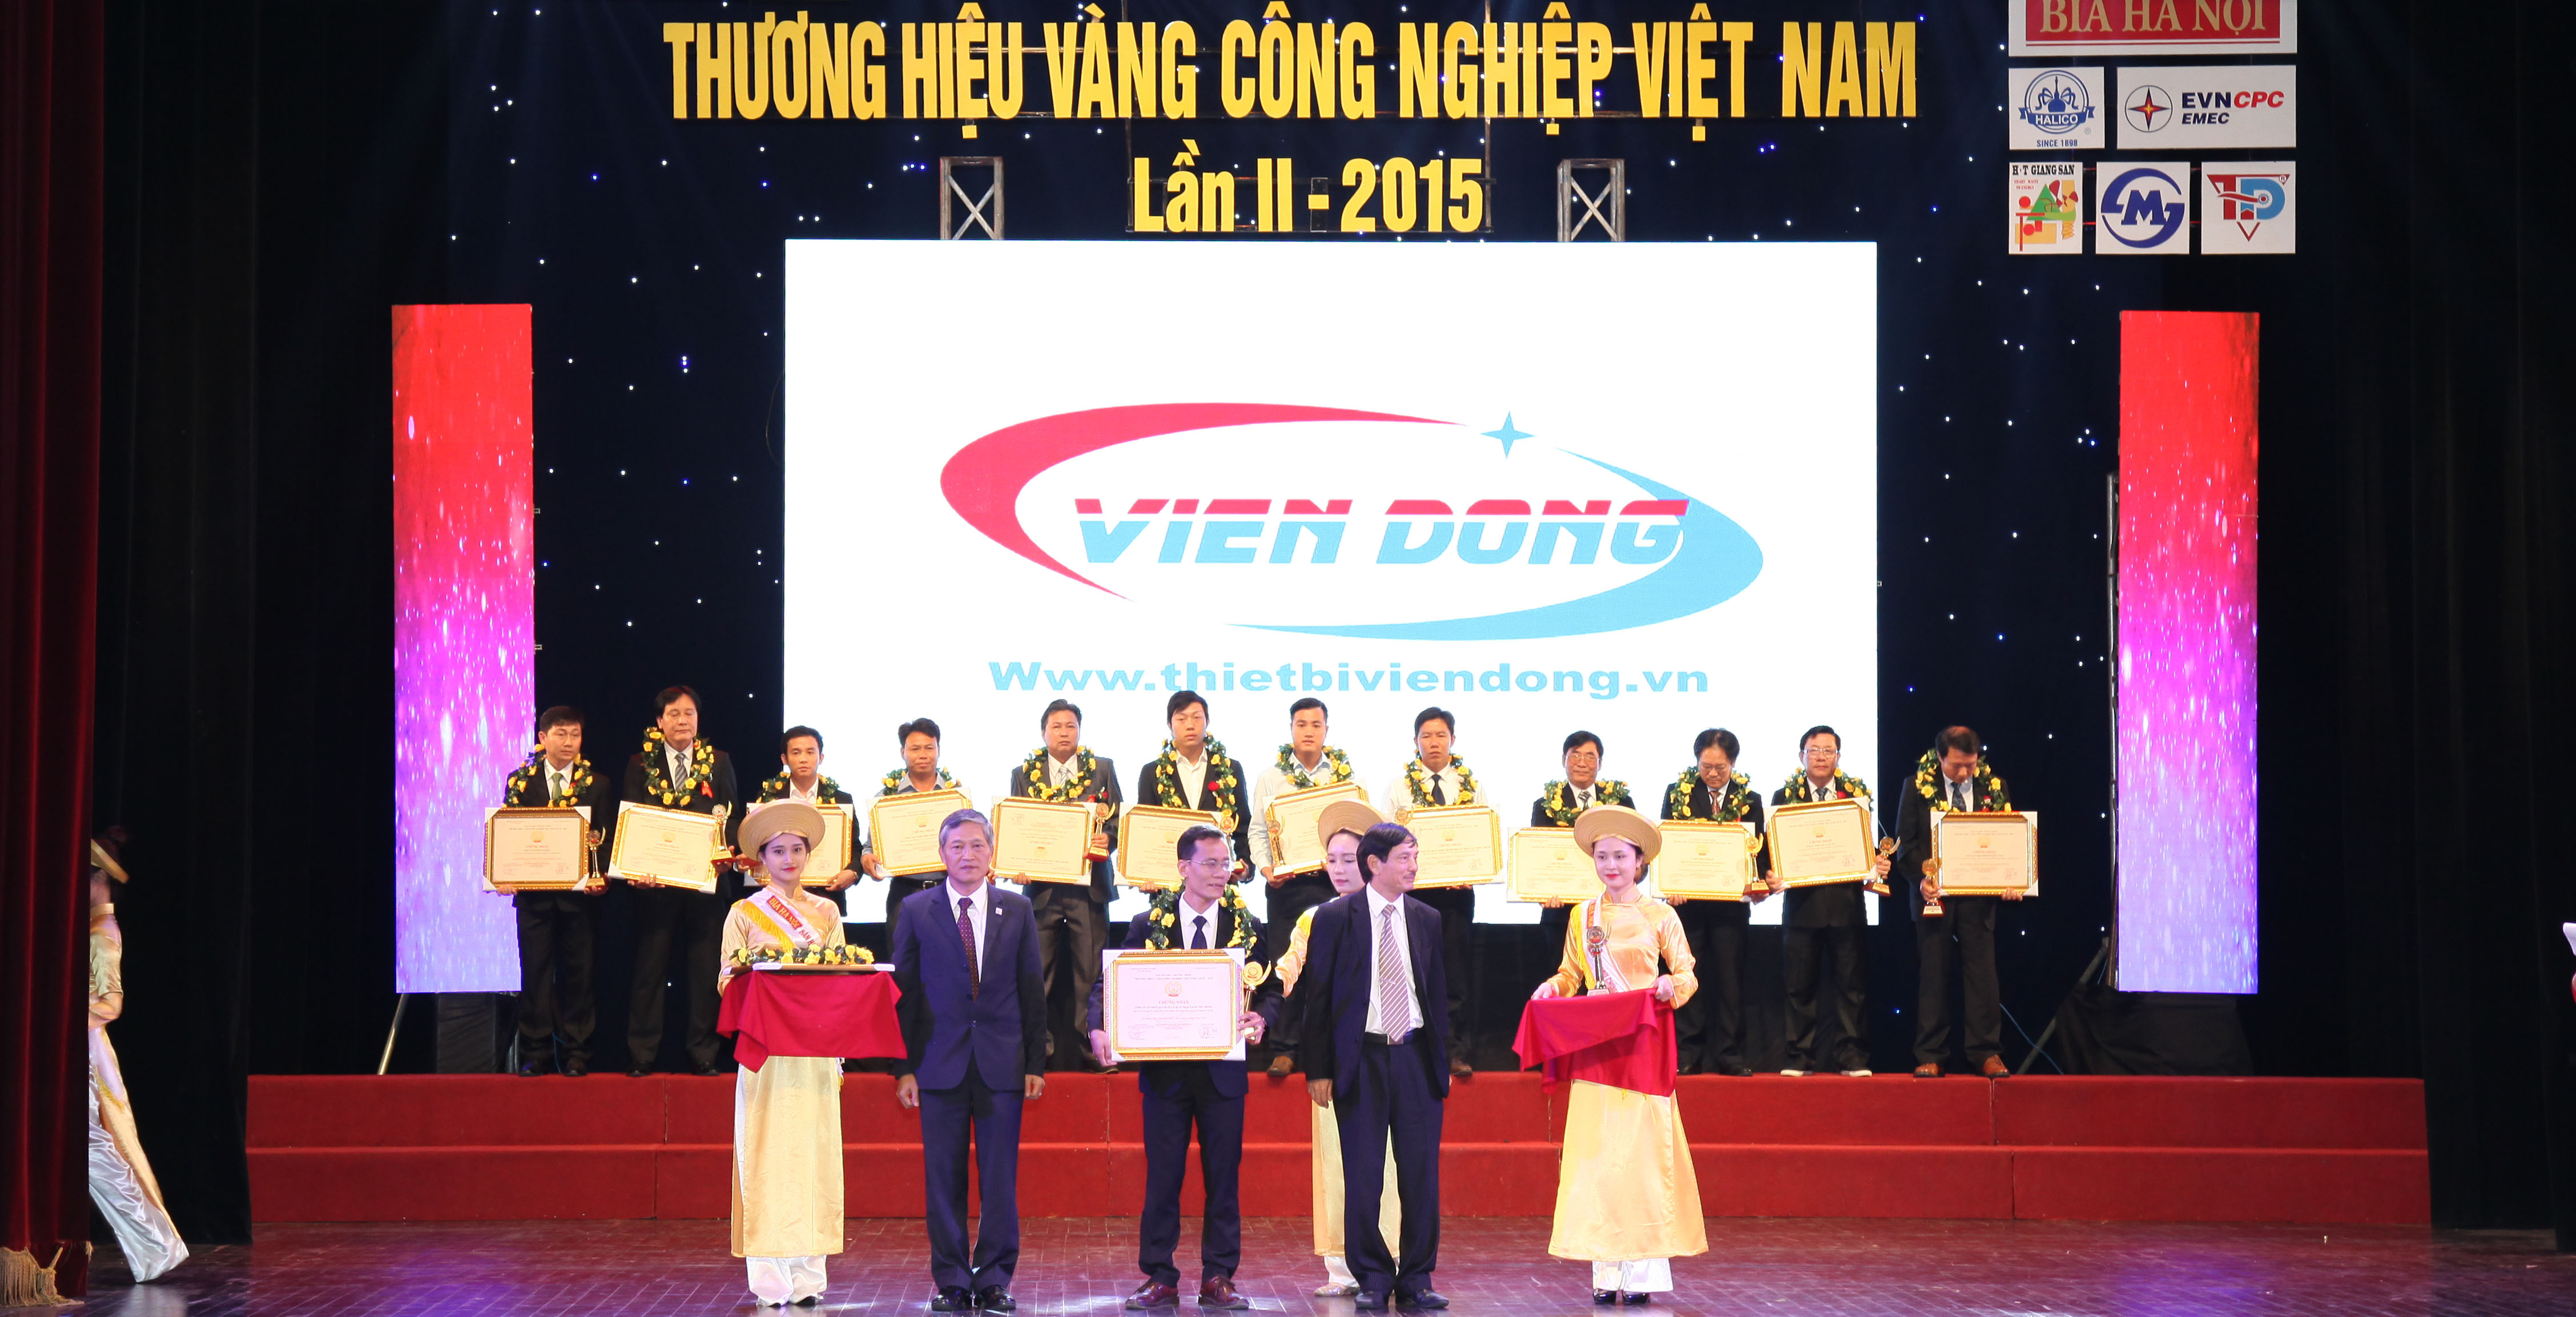 Viễn Đông - Thương hiệu Vàng Công nghiệp Việt Nam